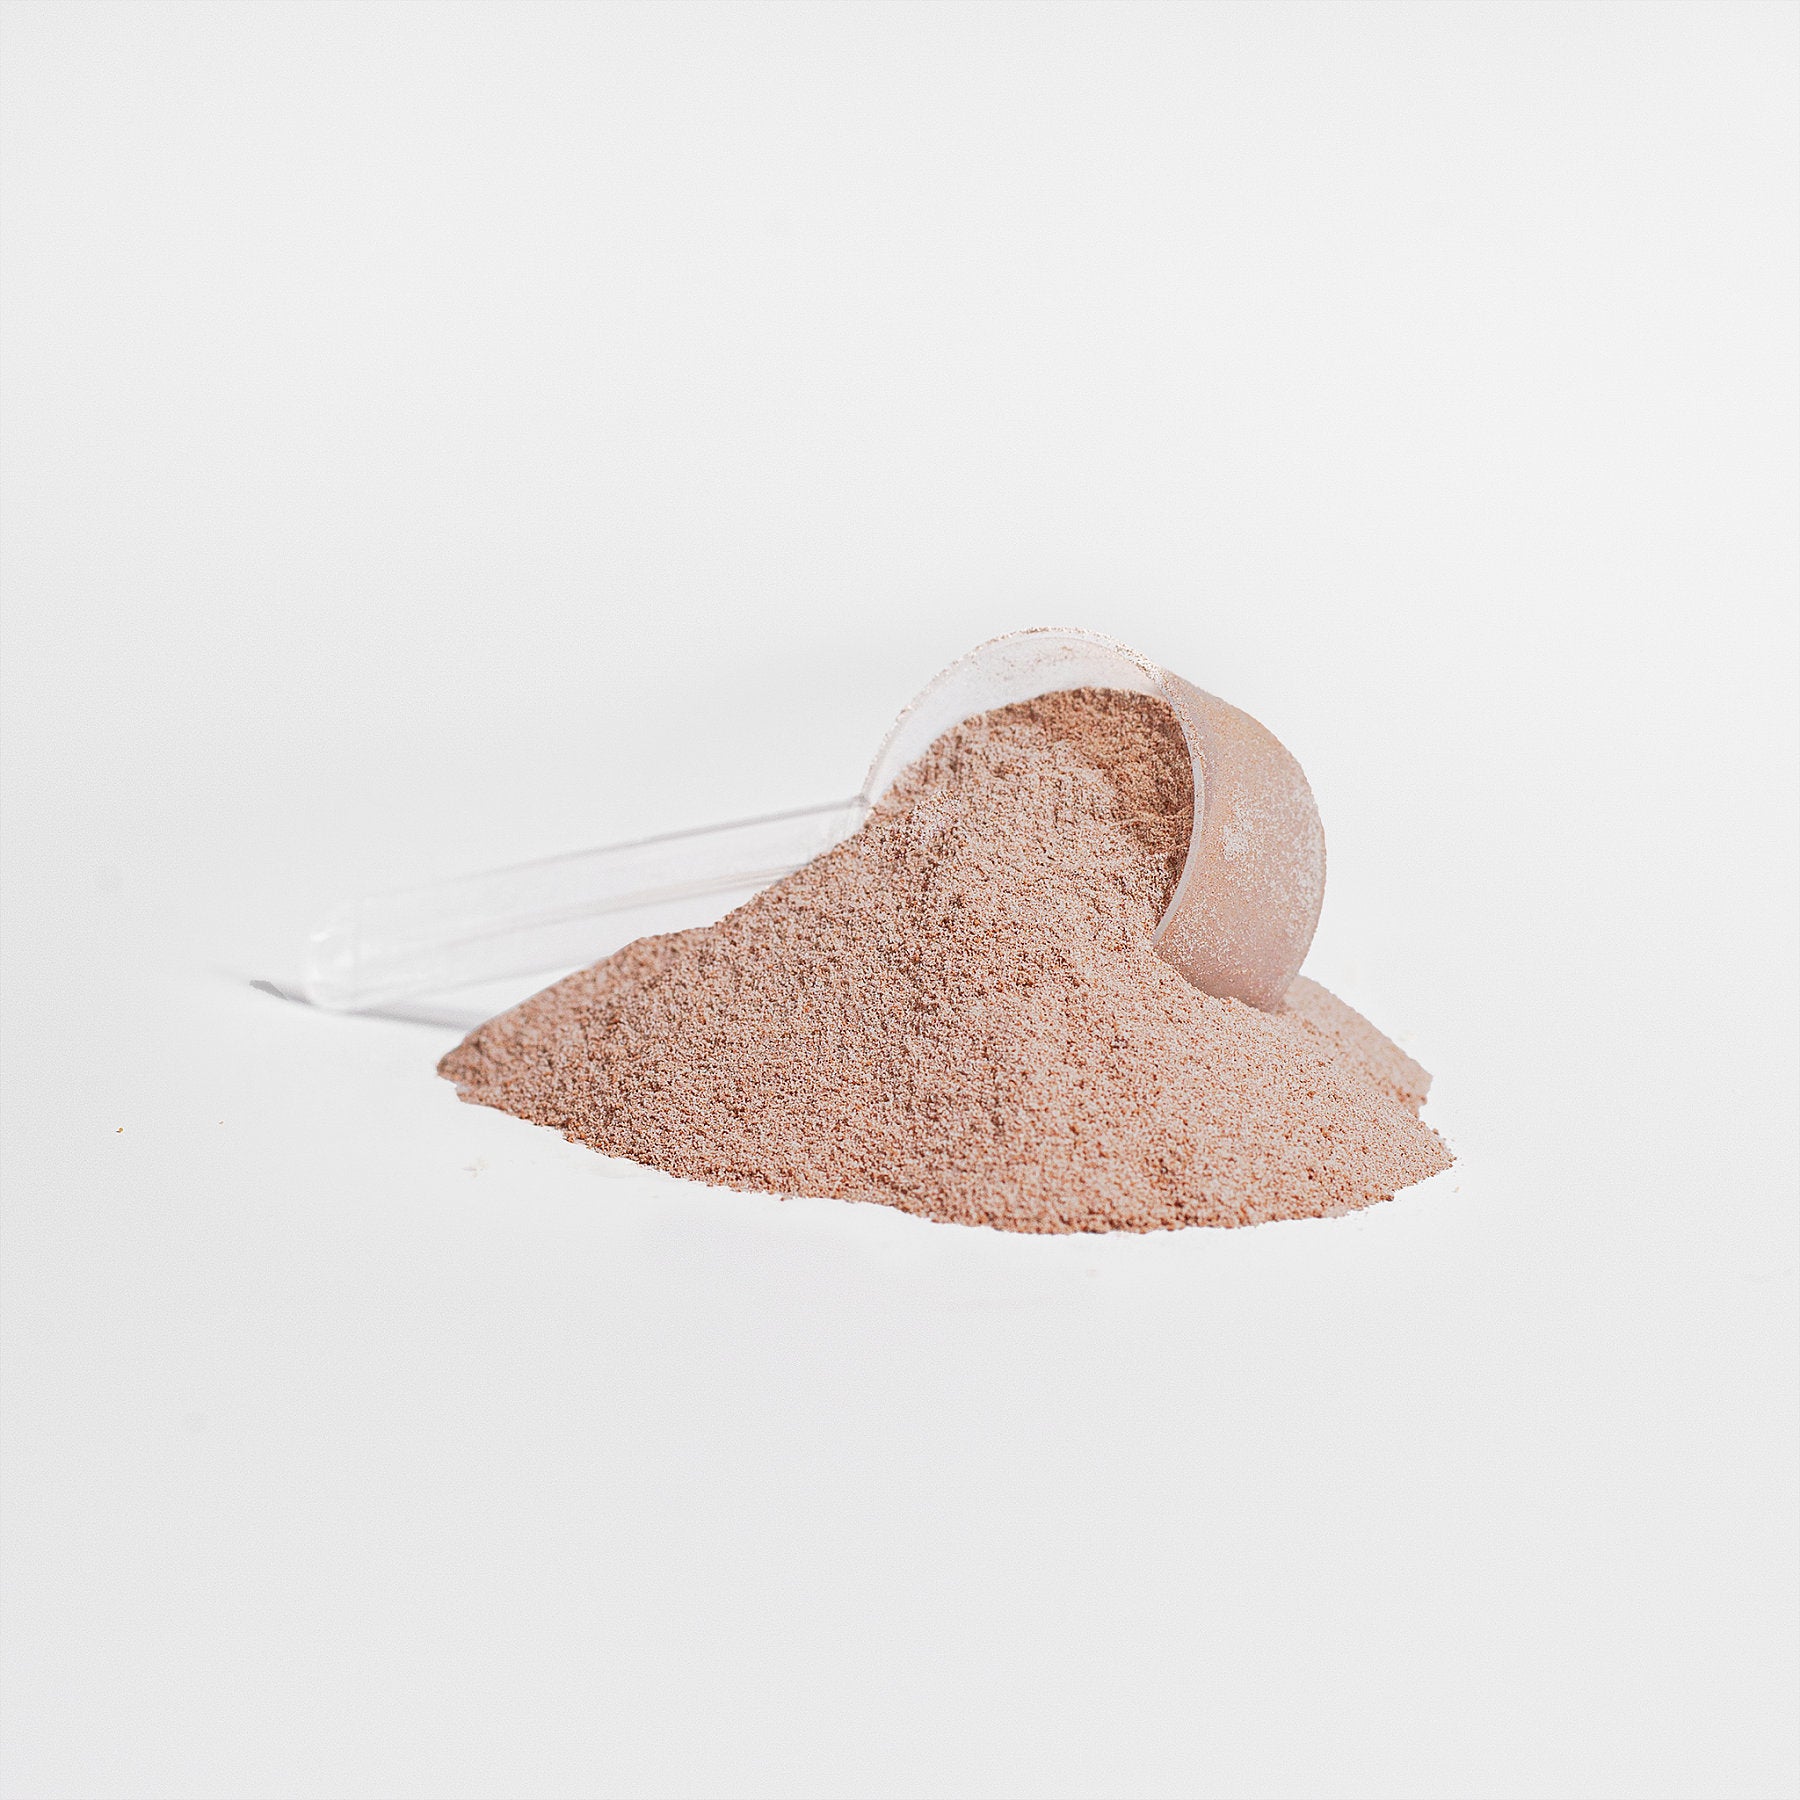 BioGain® Grass-Fed Collagen Peptides Powder (Chocolate)